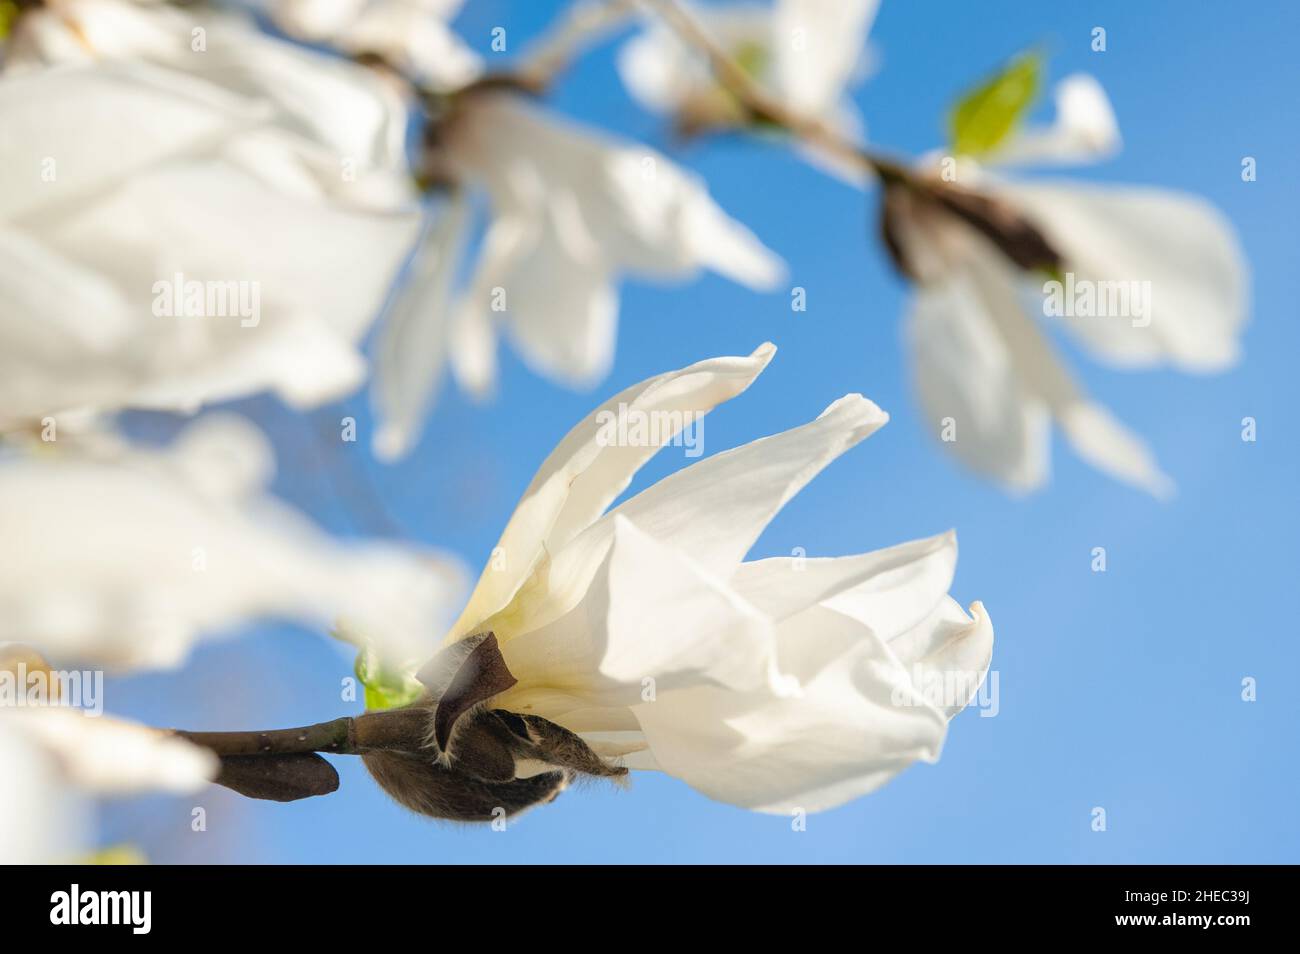 Blooming magnolia kobus, Alppipuisto Park, Helsinki, Finland Stock Photo